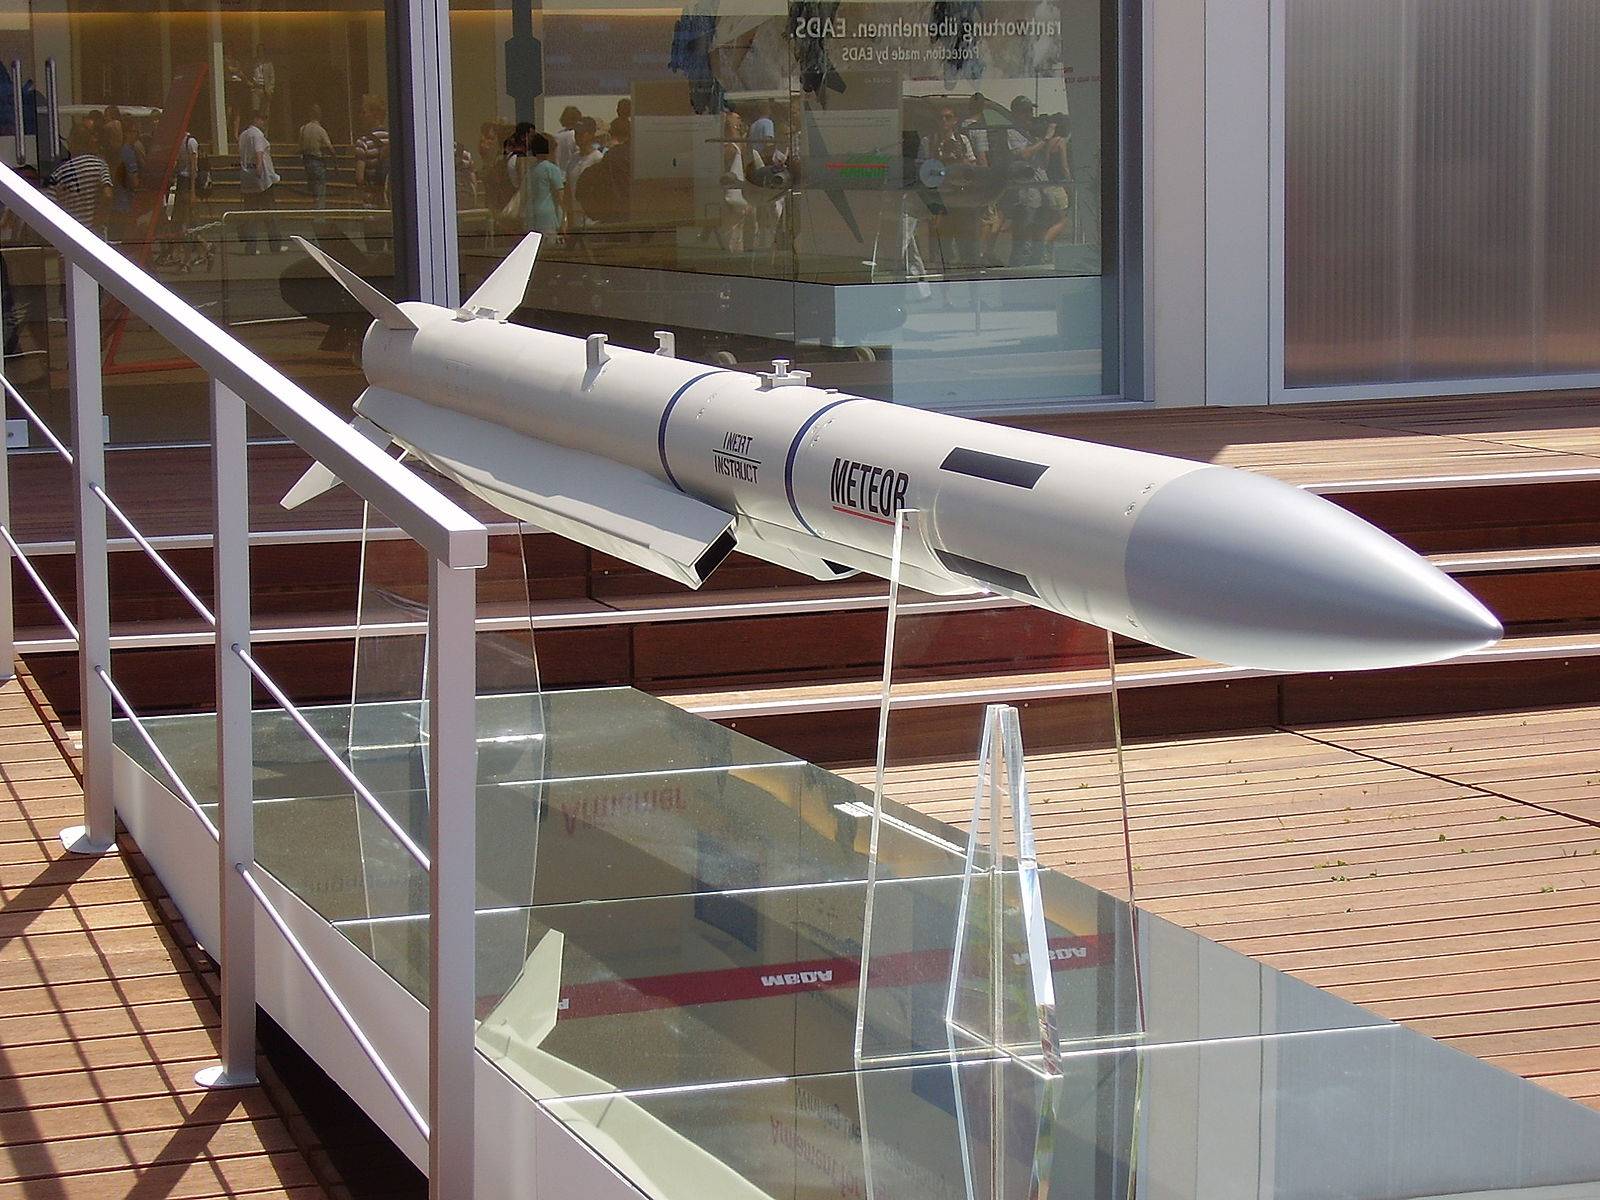 原创印度将获得2种先进空空导弹,射程都超过100公里,装备多种战机